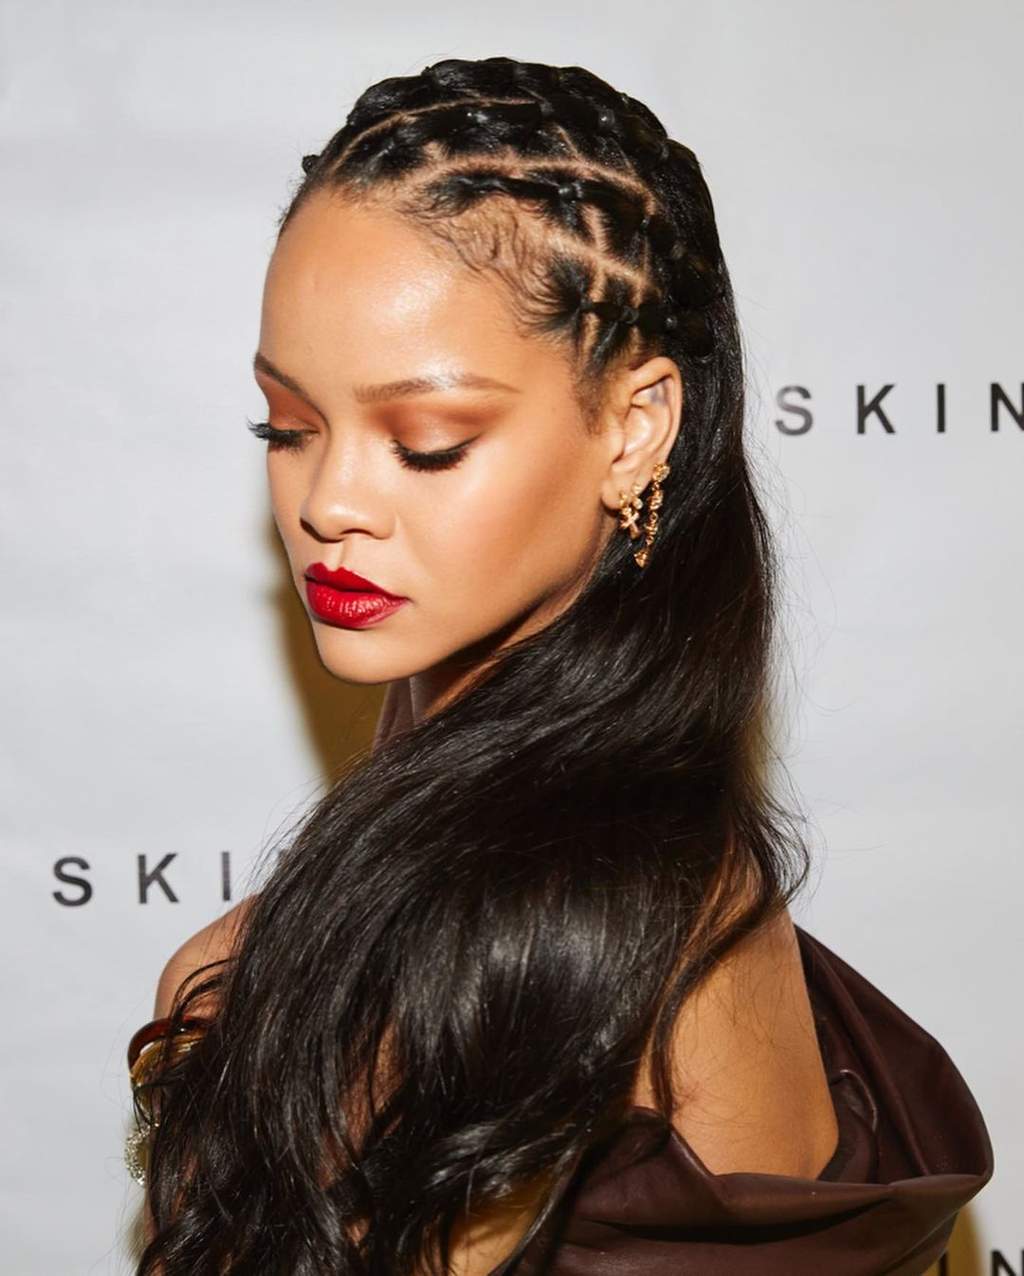 La cantante convertida en magnate de la belleza "Rihanna" ahora es oficialmente multimillonaria - 9 - junio 14, 2022